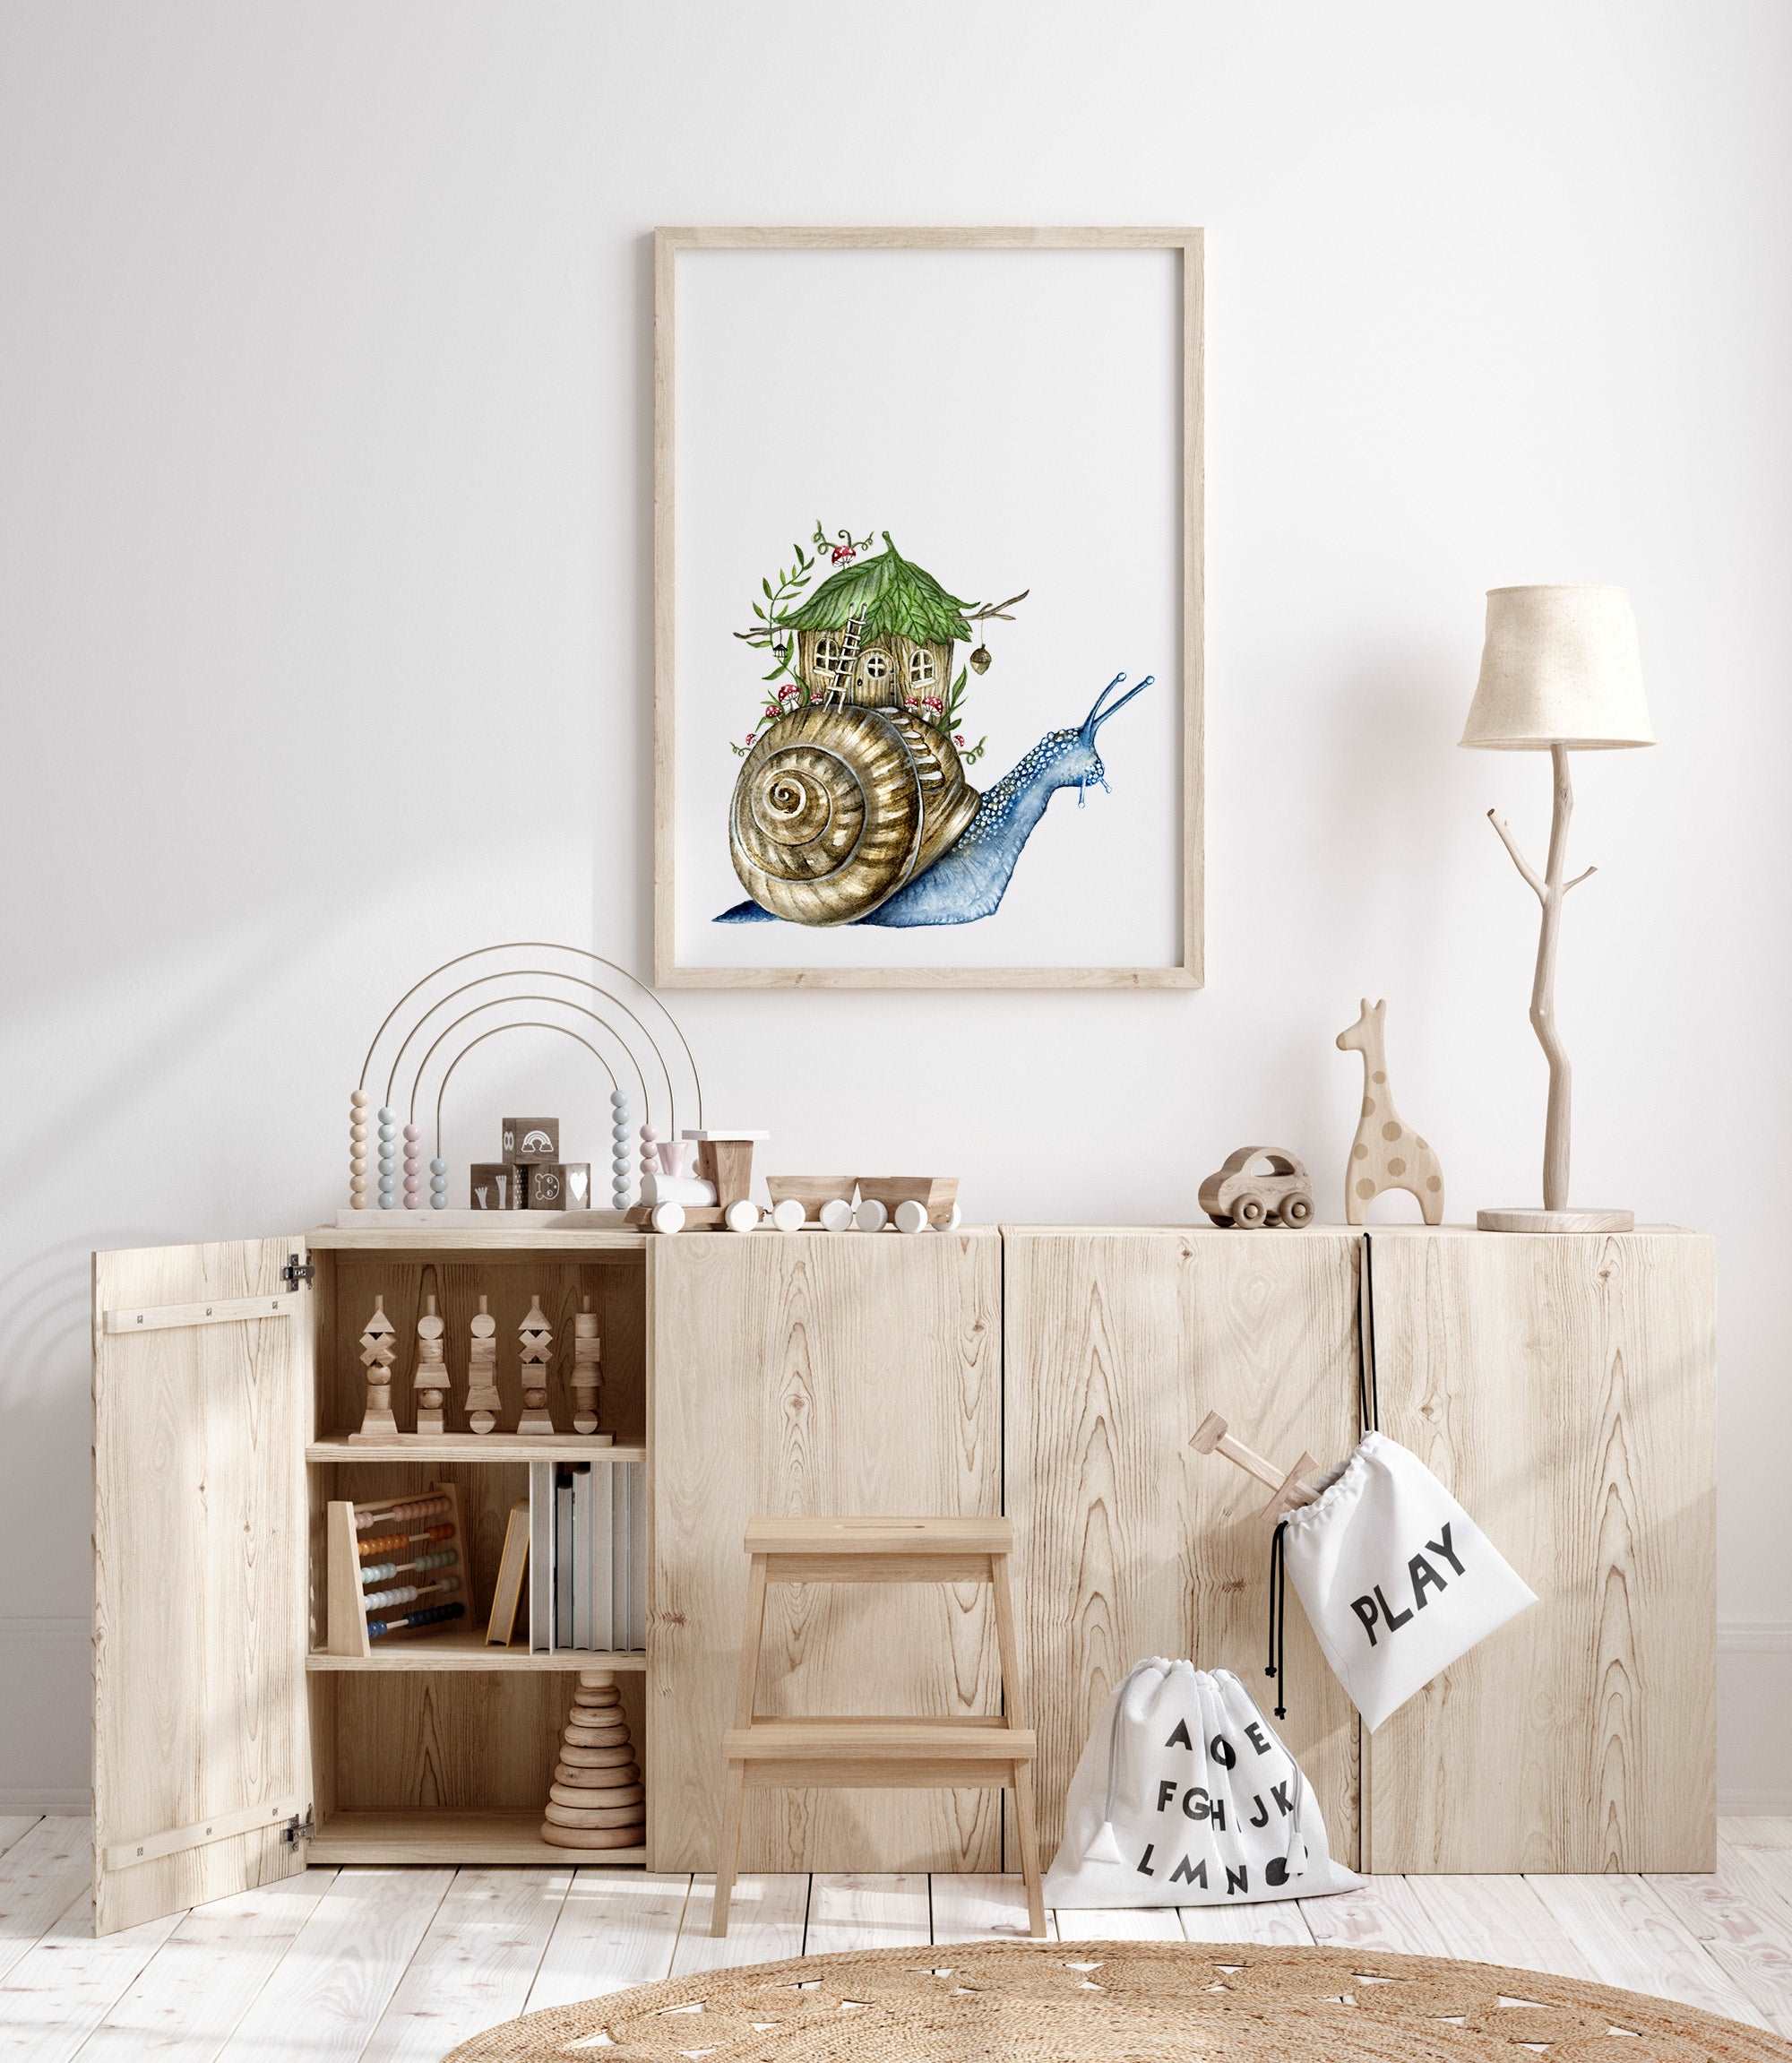 Snail Homestead Art Print (Vertical)